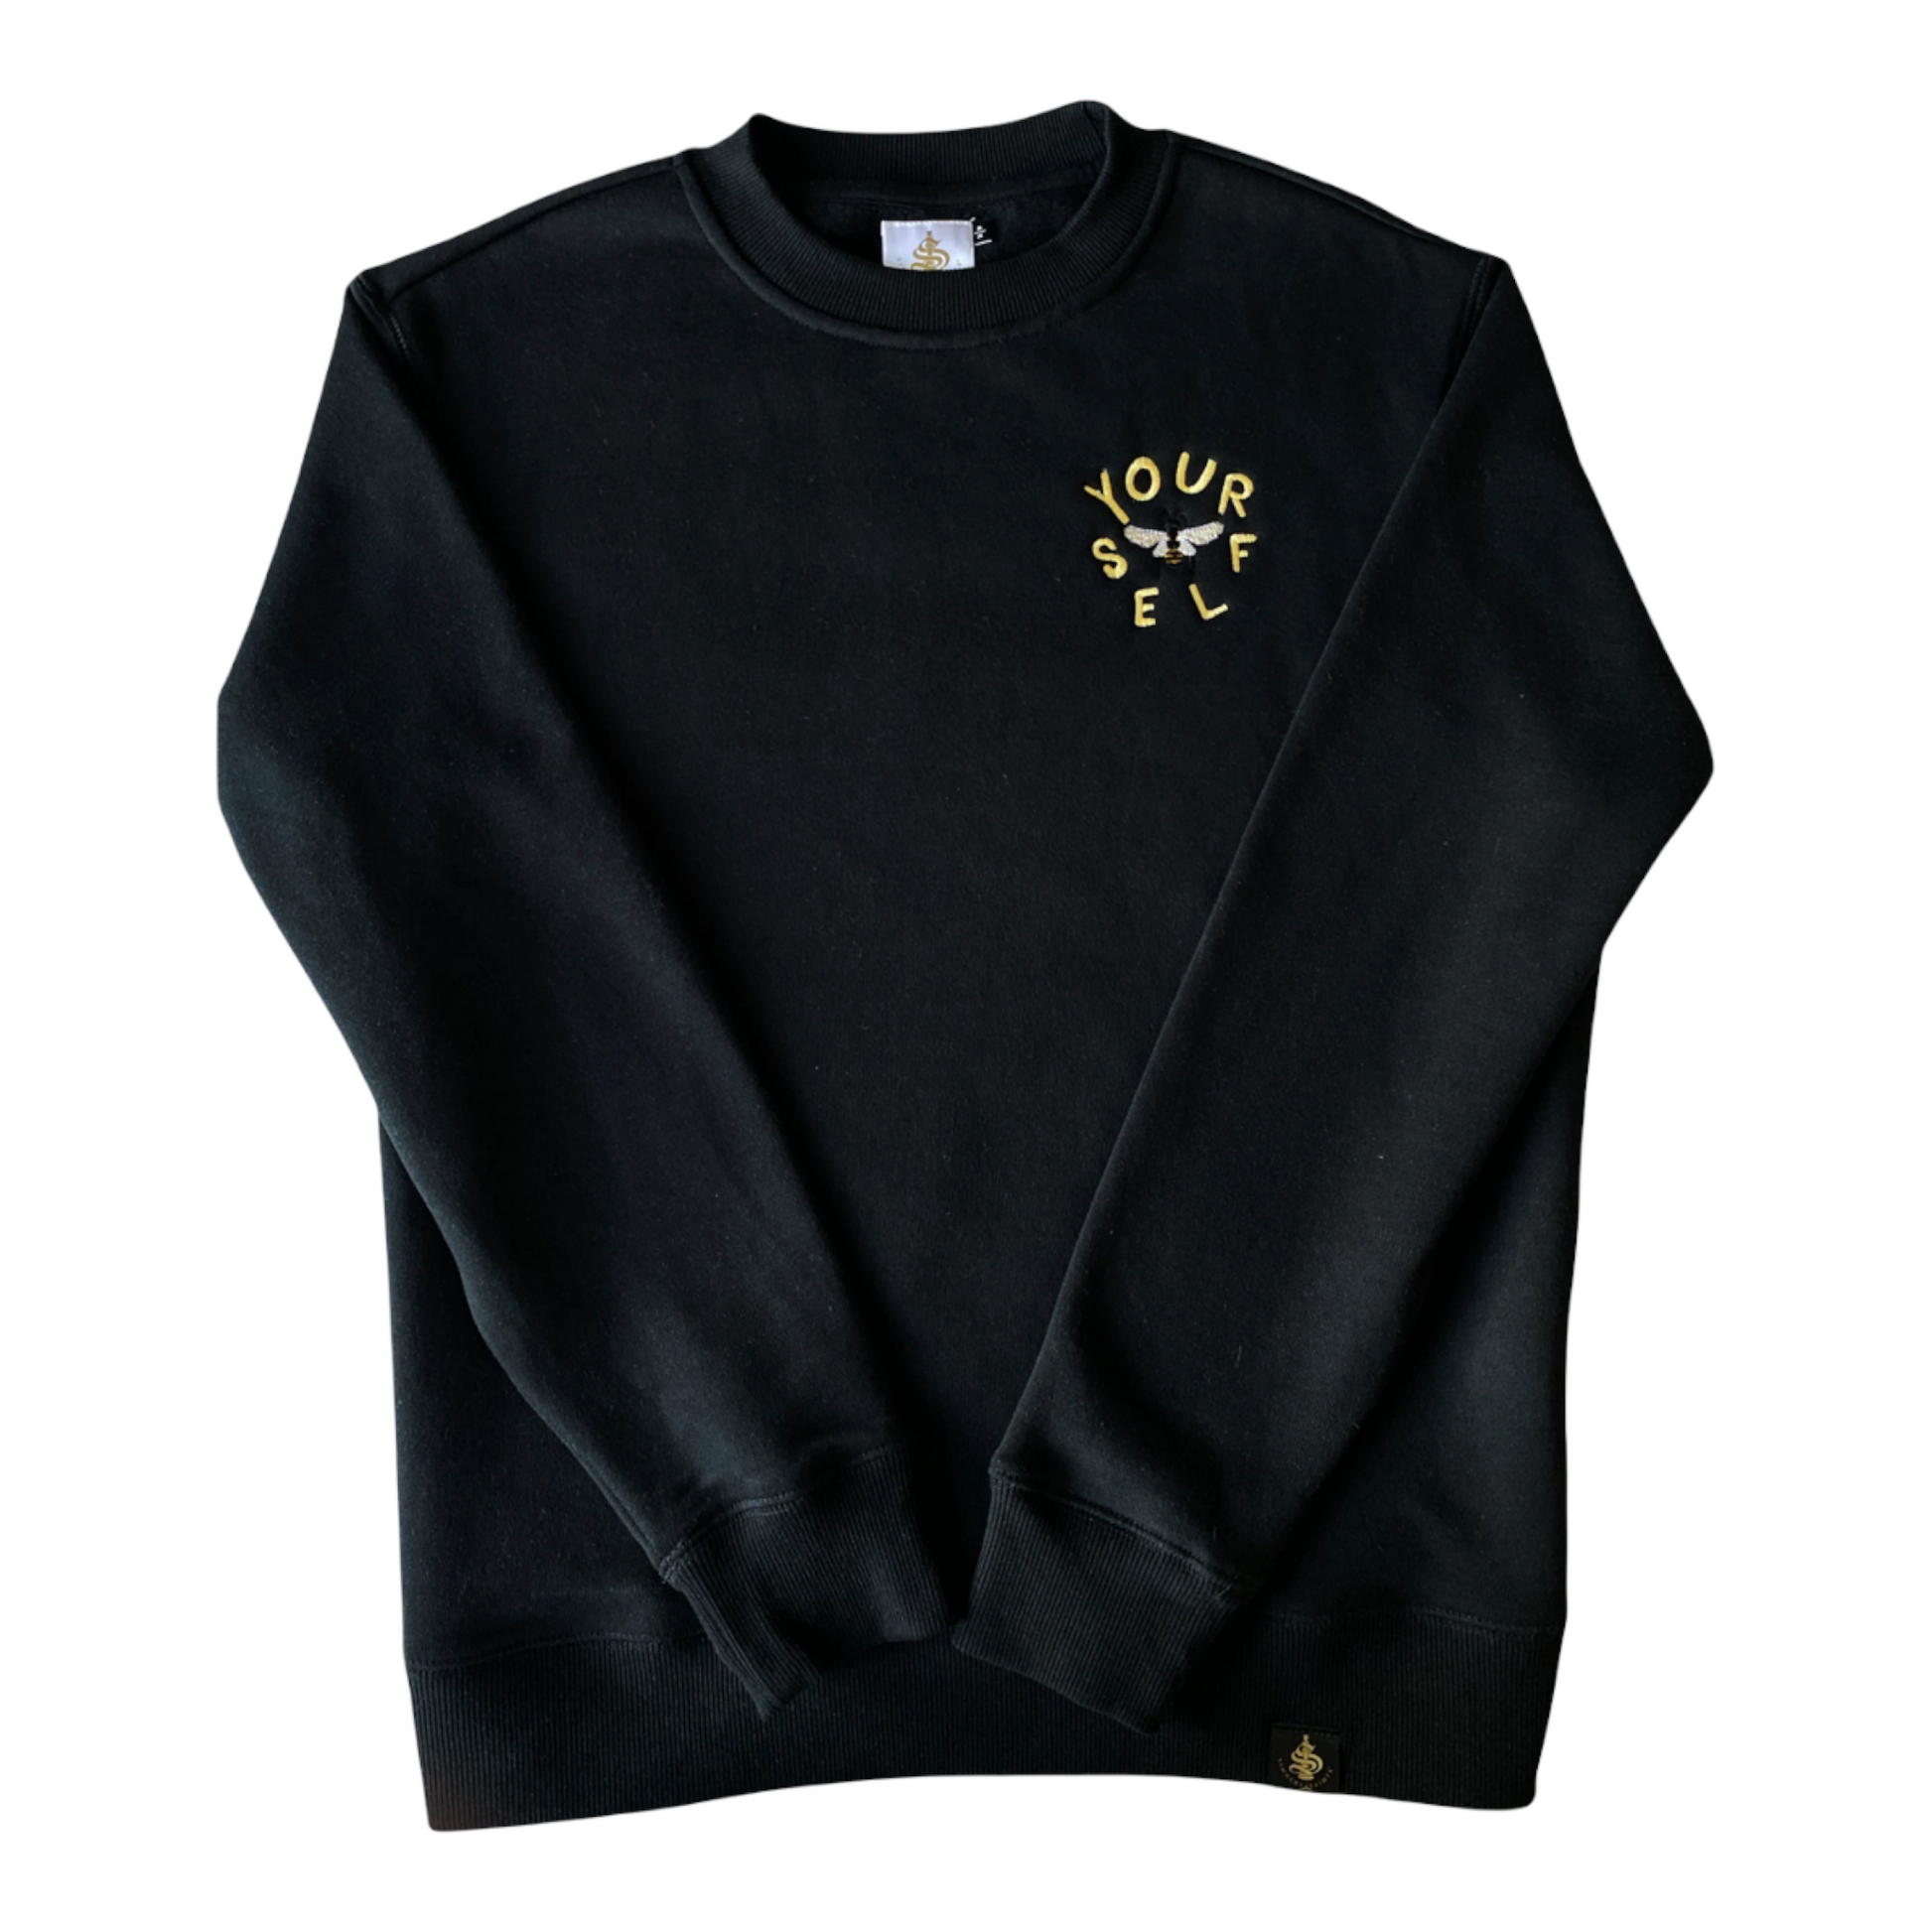 Embroidered Bee yourself crewneck sweatshirt - Unisex - TheSinners2Saints